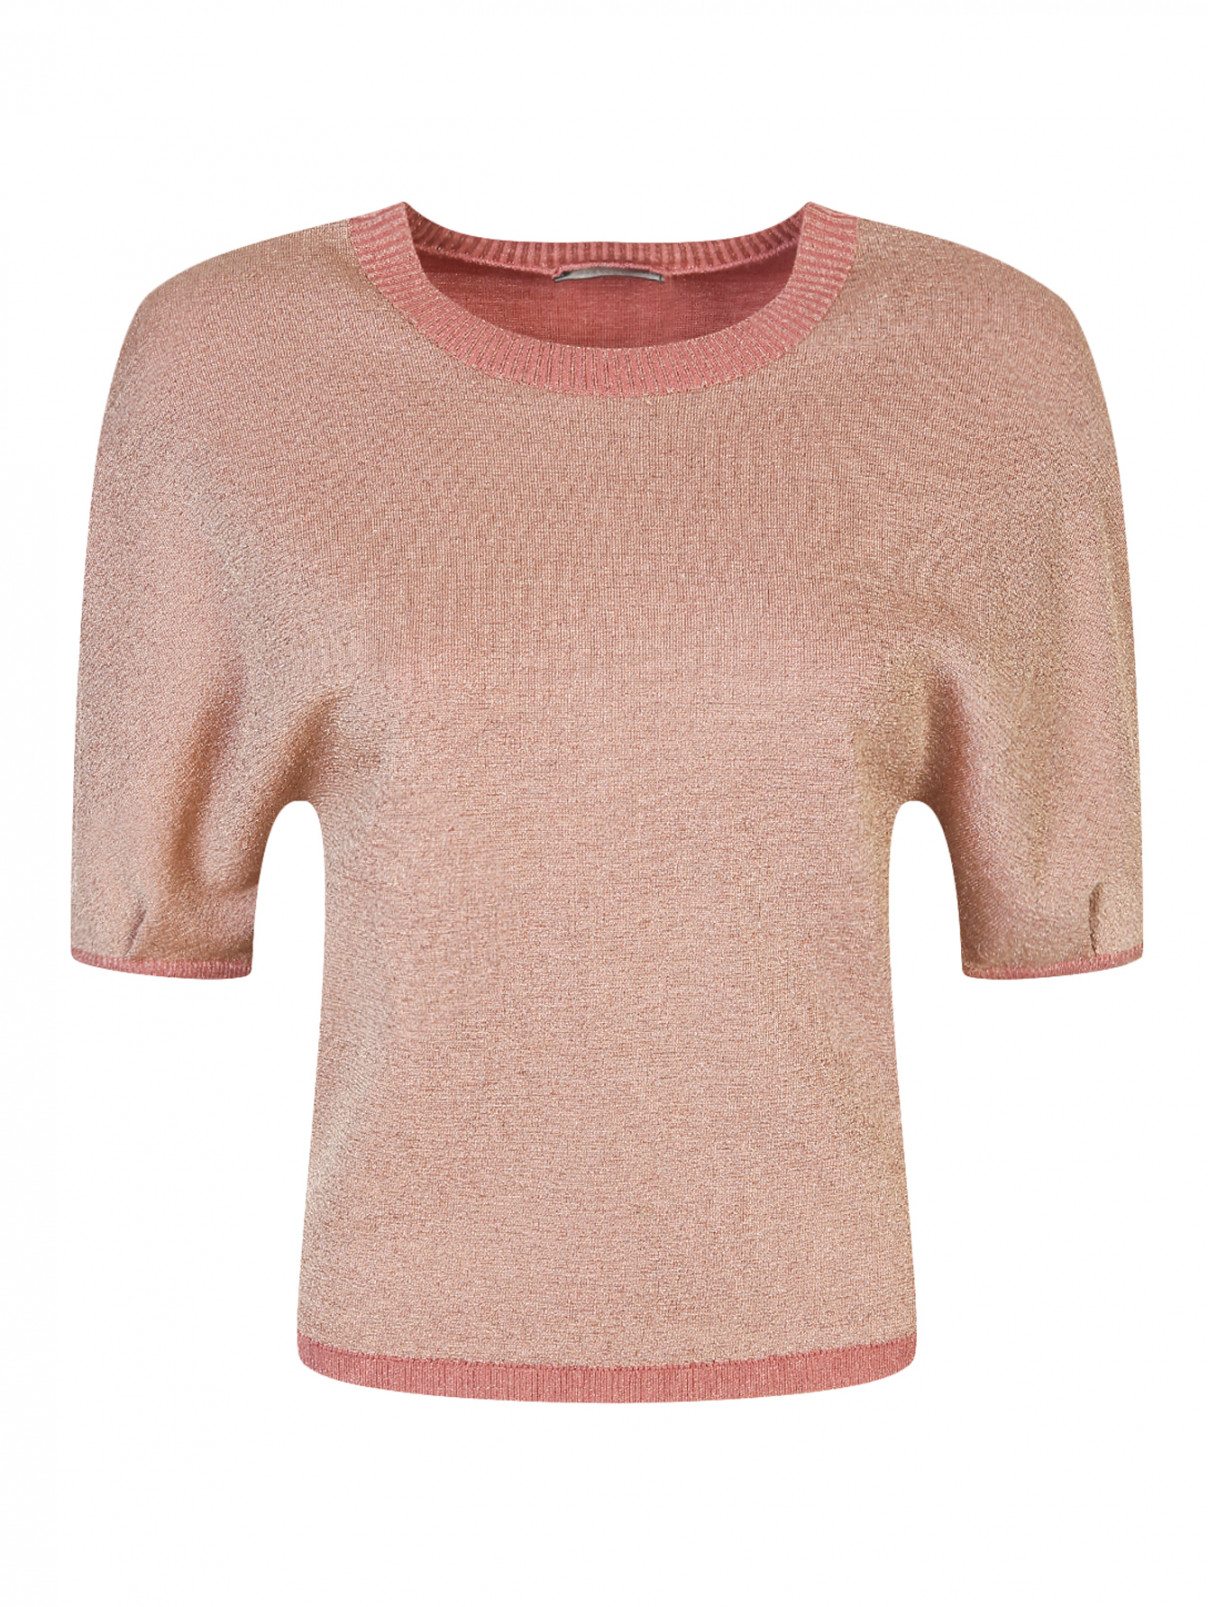 Джемпер из шерсти с люрексовой нитью Etro  –  Общий вид  – Цвет:  Розовый